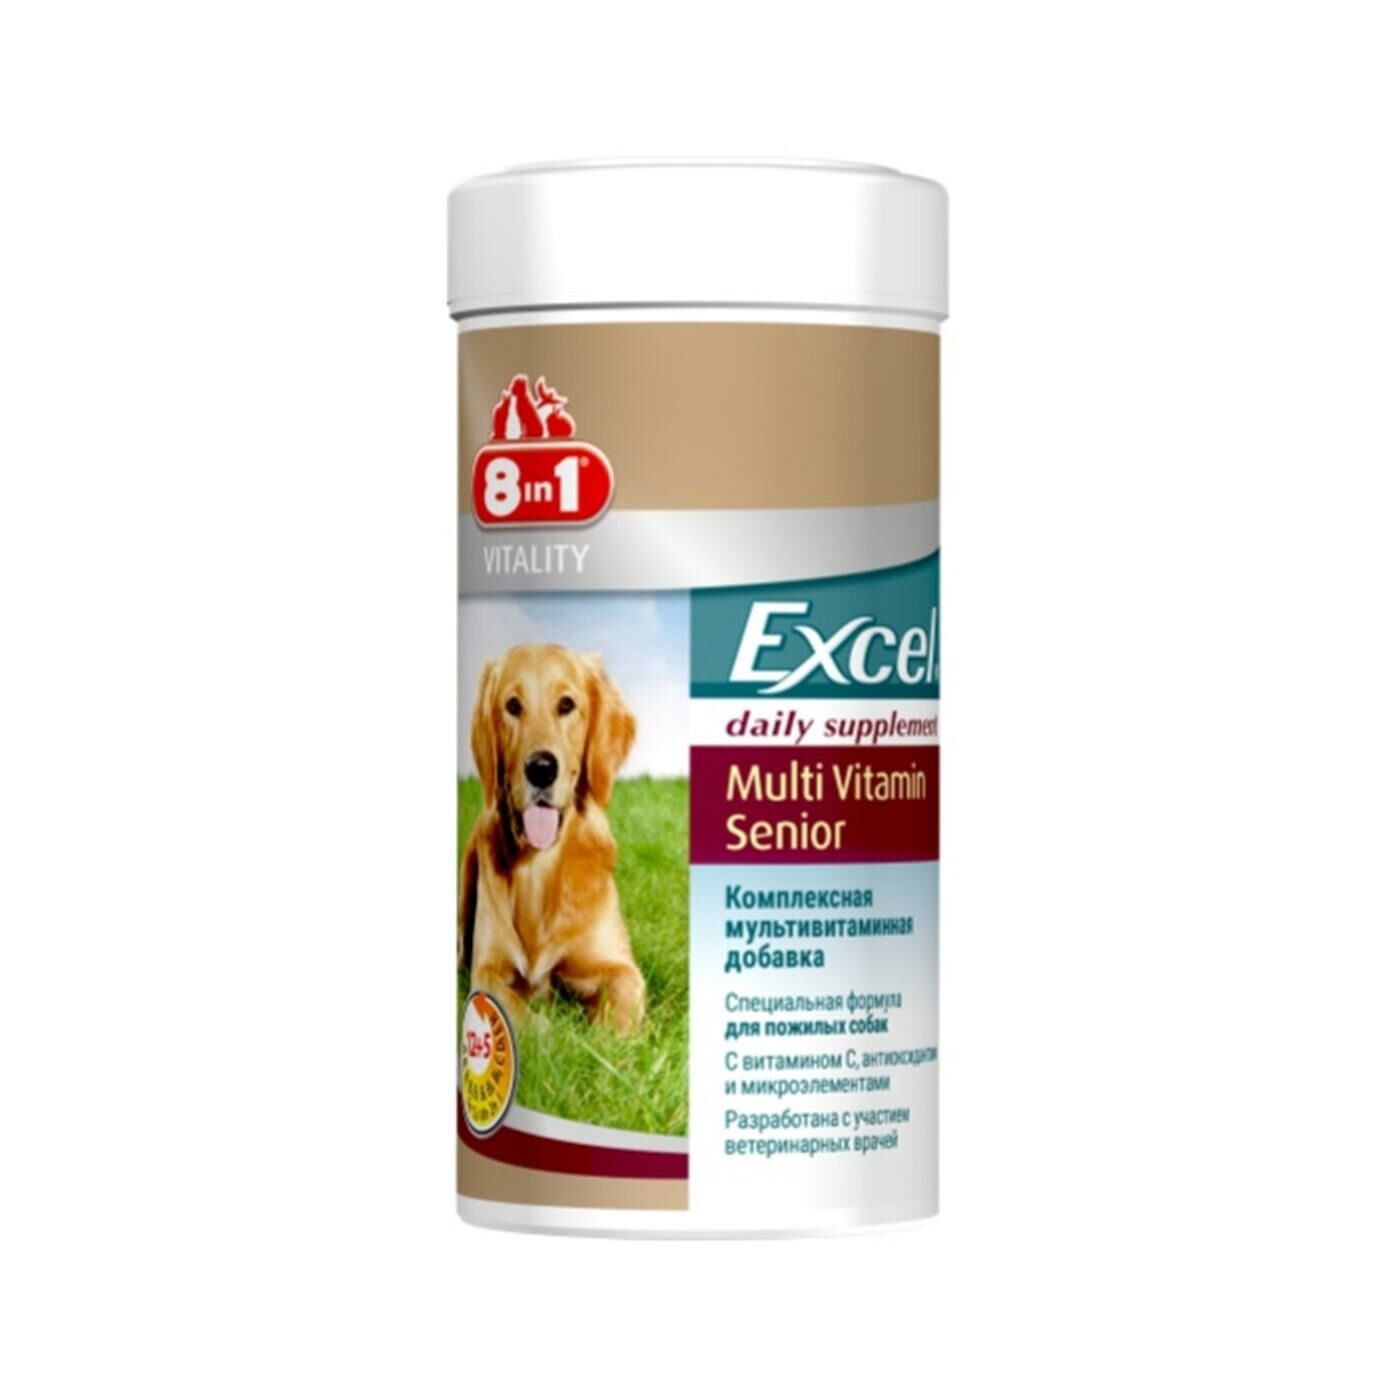 8 in 1 Excel Senıor Yaşlı Köpek Multivitamin Tablet 70 Adet